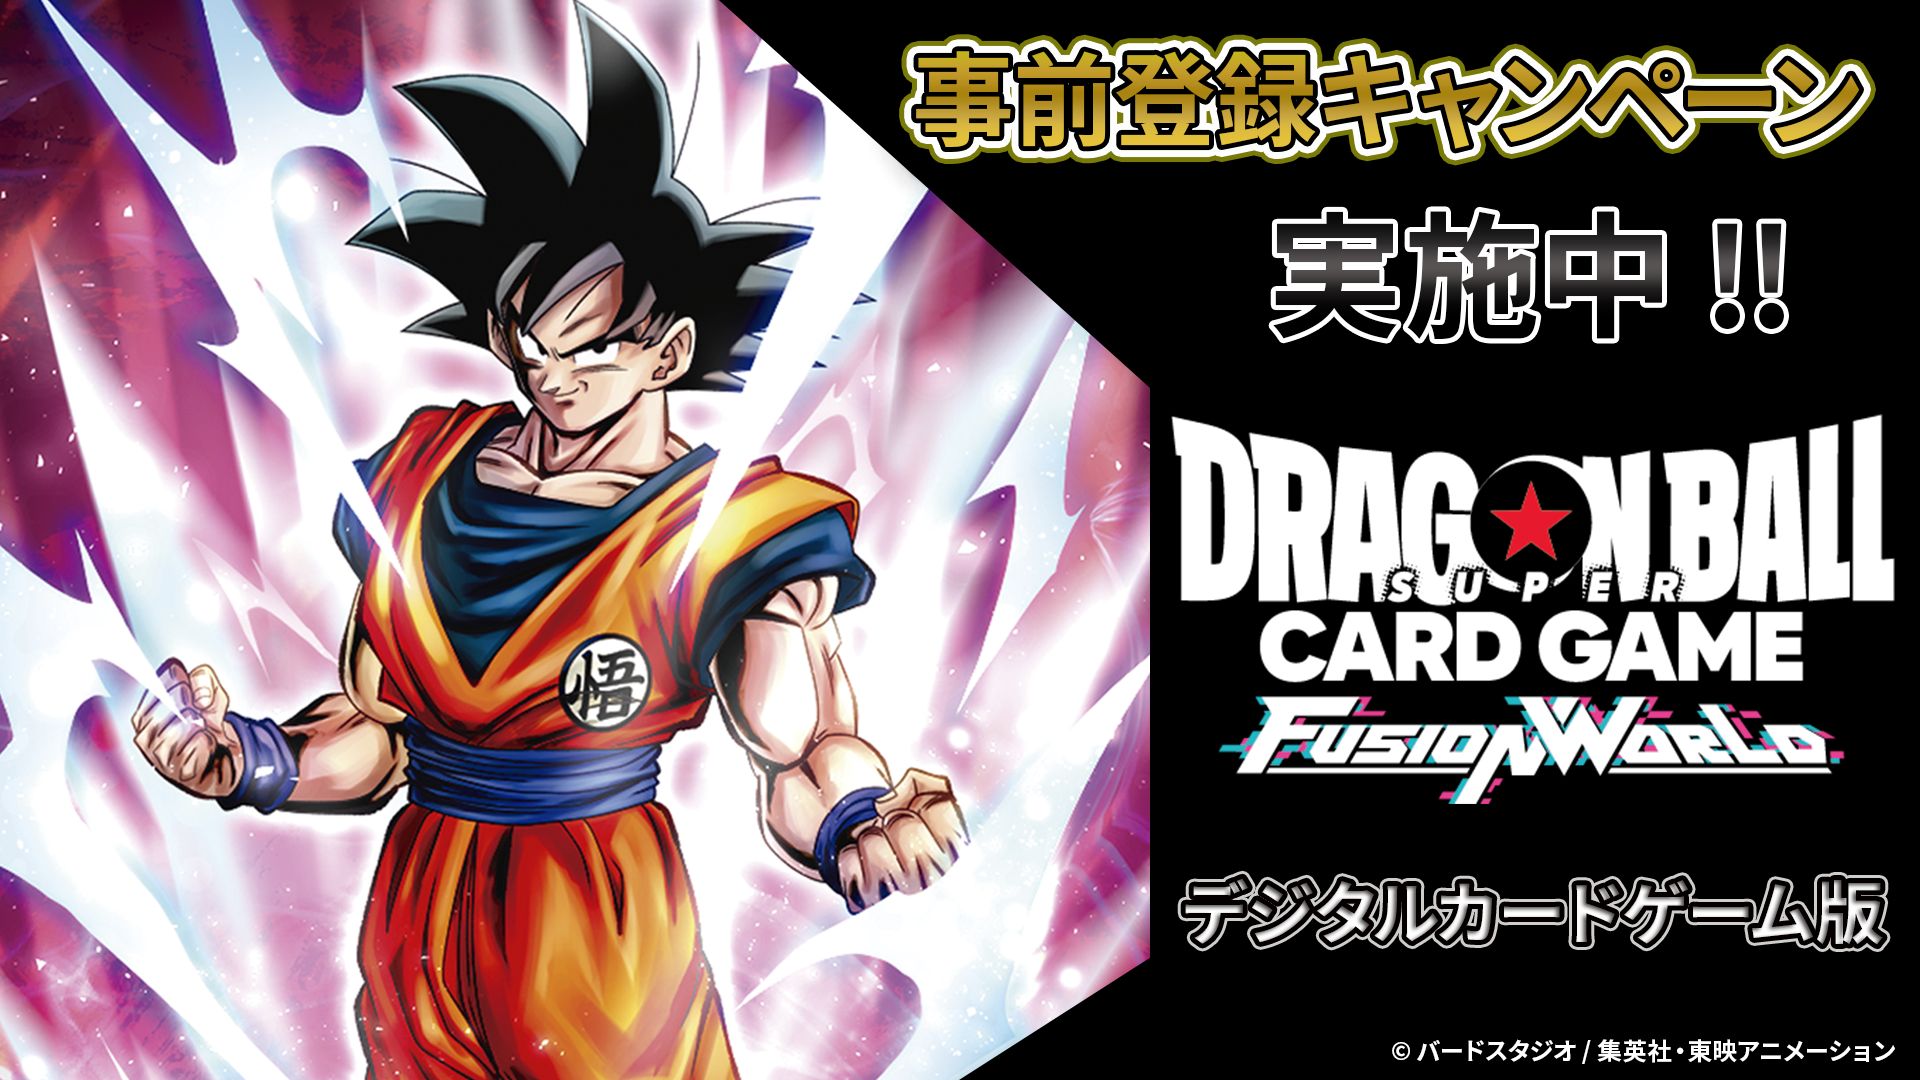 ¡Campañas previas al lanzamiento de la versión digital de DRAGON BALL SUPER CARD GAME Fusion World!